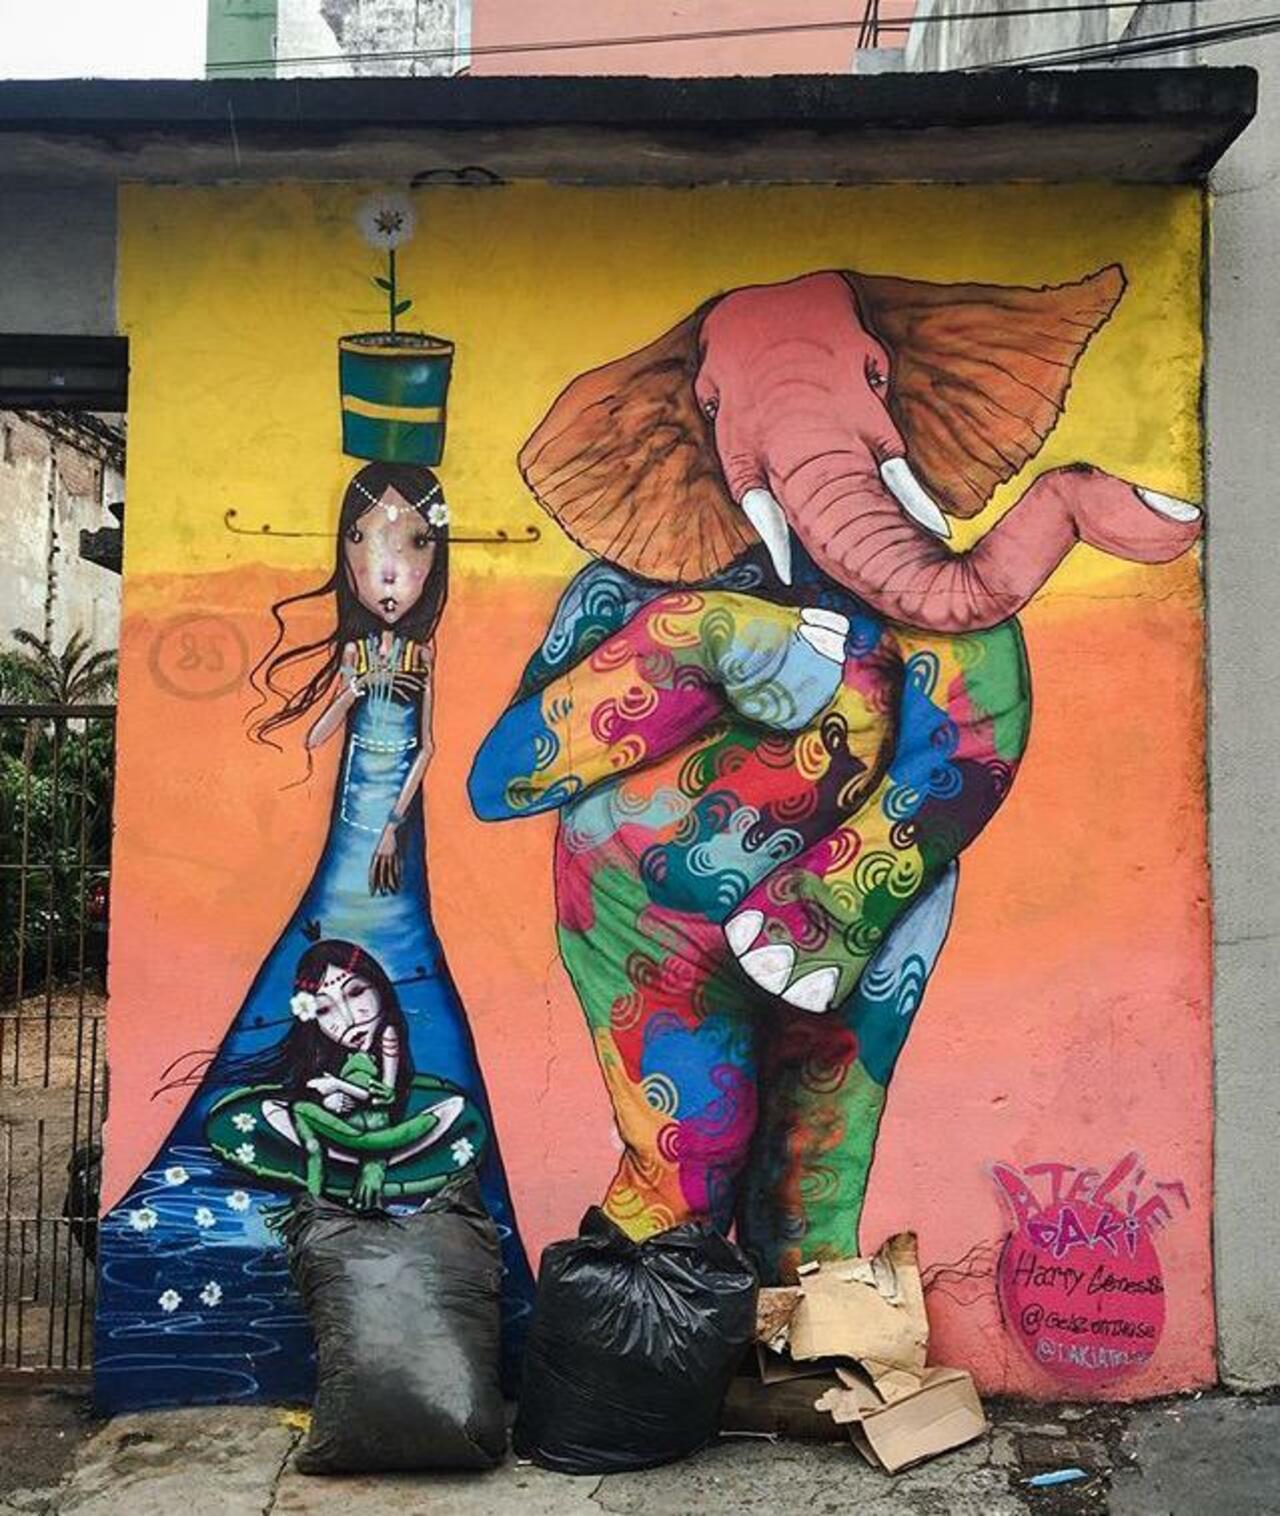 Street Art by Harry Geneis & Gelson in São Paulo 

#art #mural #graffiti #streetart http://t.co/ovle0o8JHZ